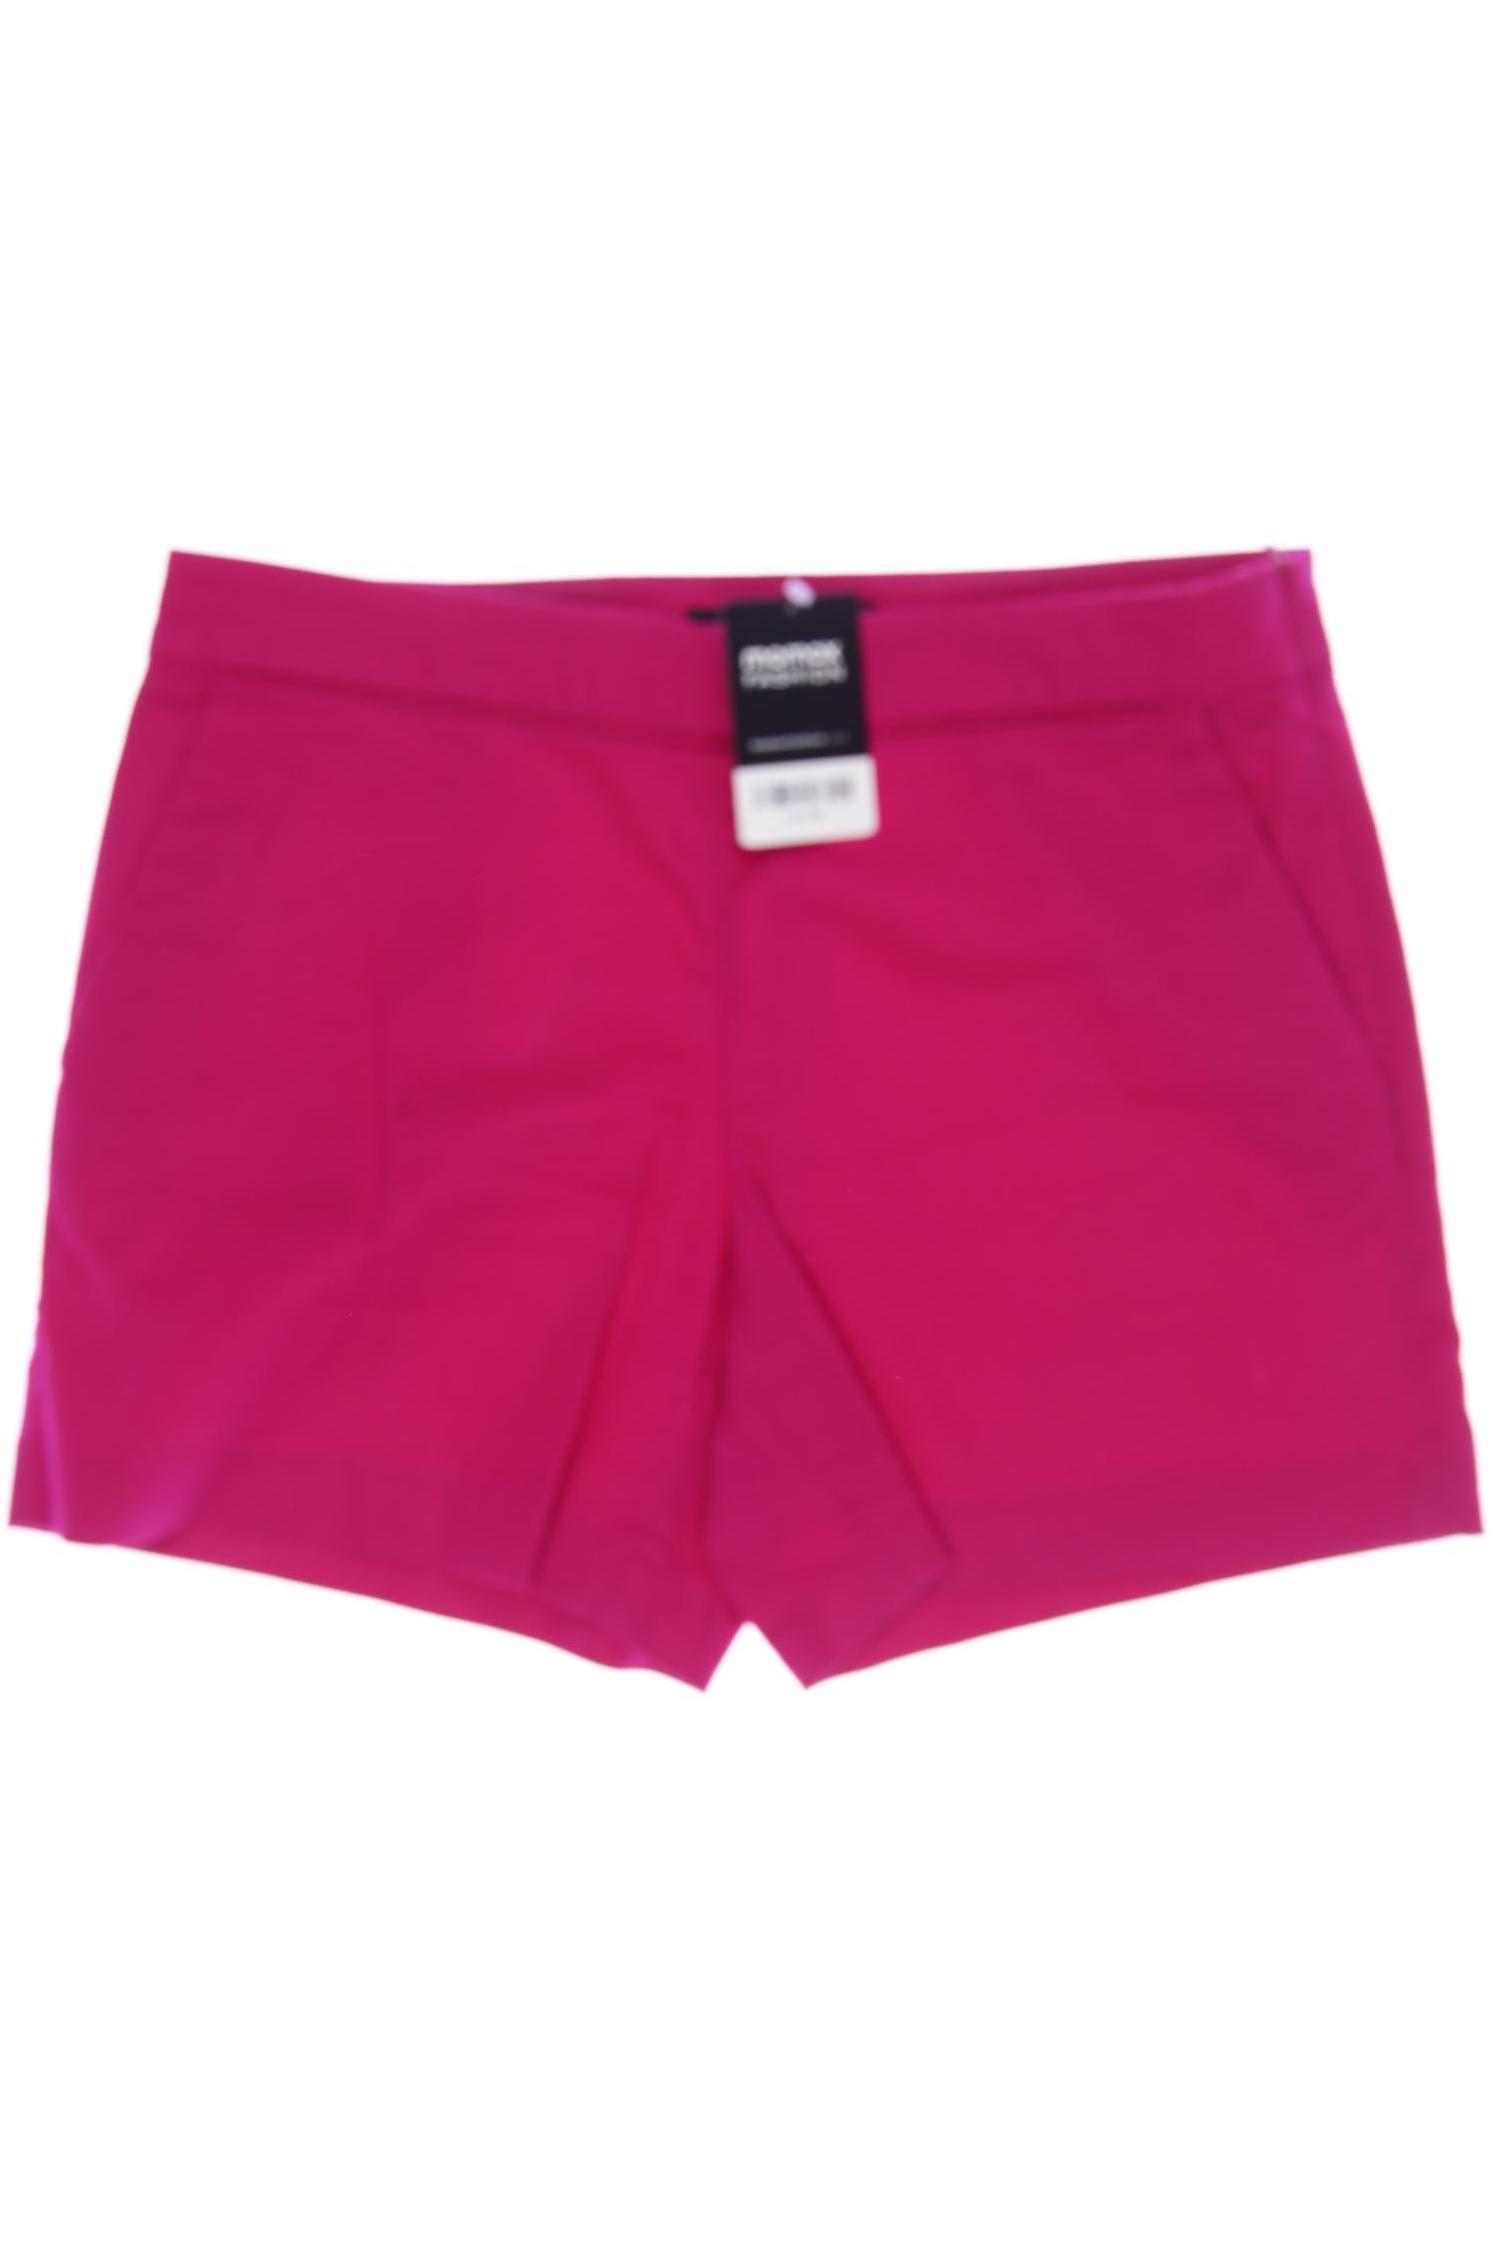 Hallhuber Damen Shorts, pink von Hallhuber